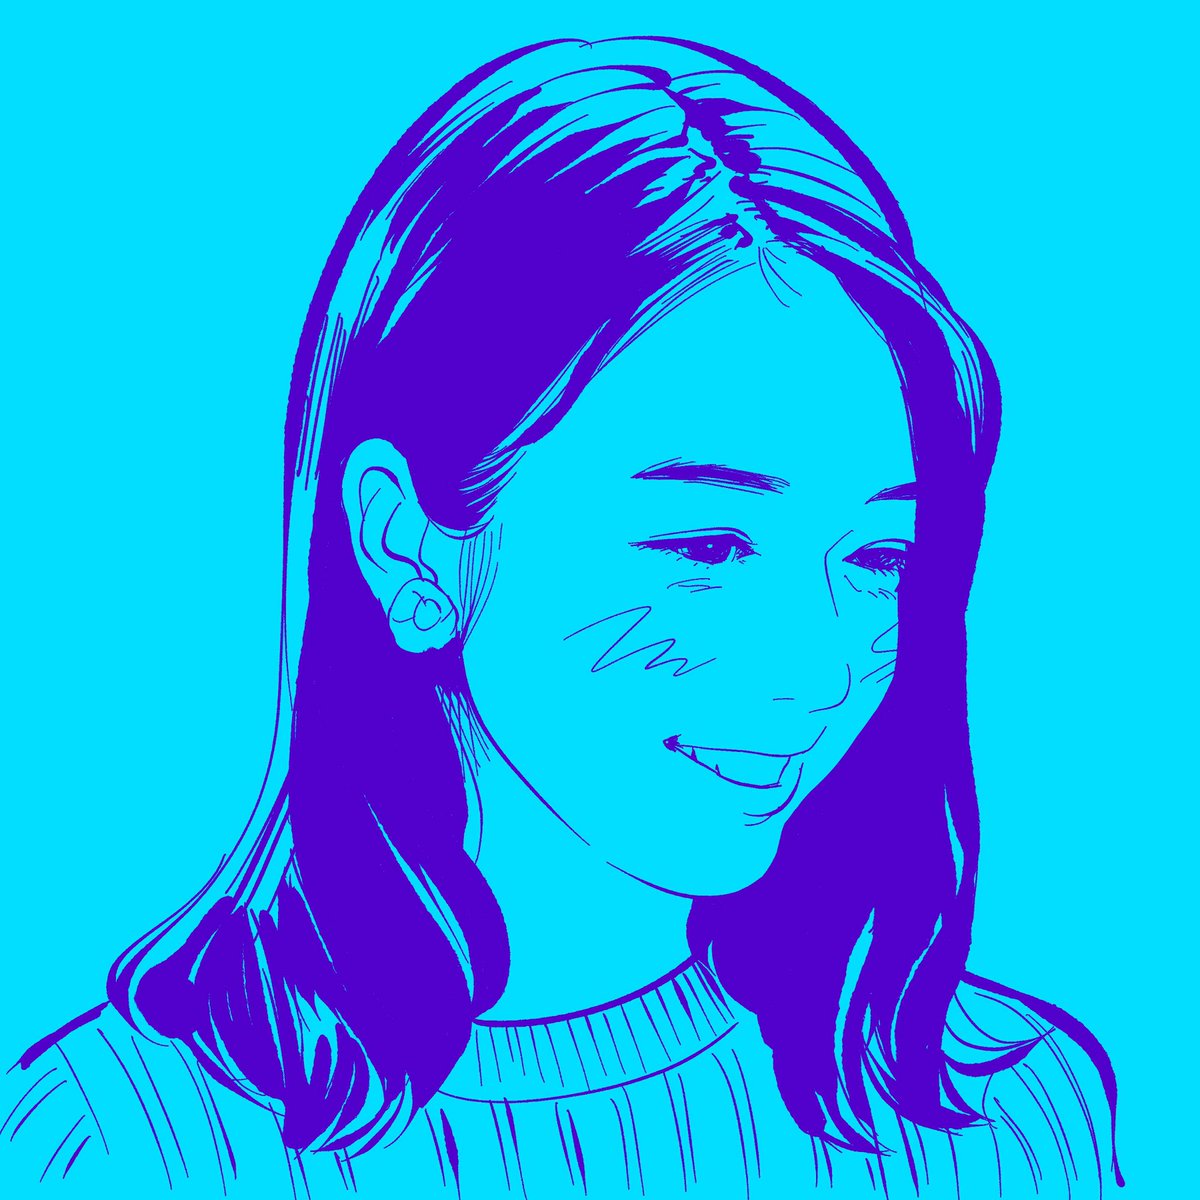 『上白石萌音さん(@mone_tohoent )』

#イラスト #女優 #上白石萌音 #illustration #portrait #actress #monekamishiraishi